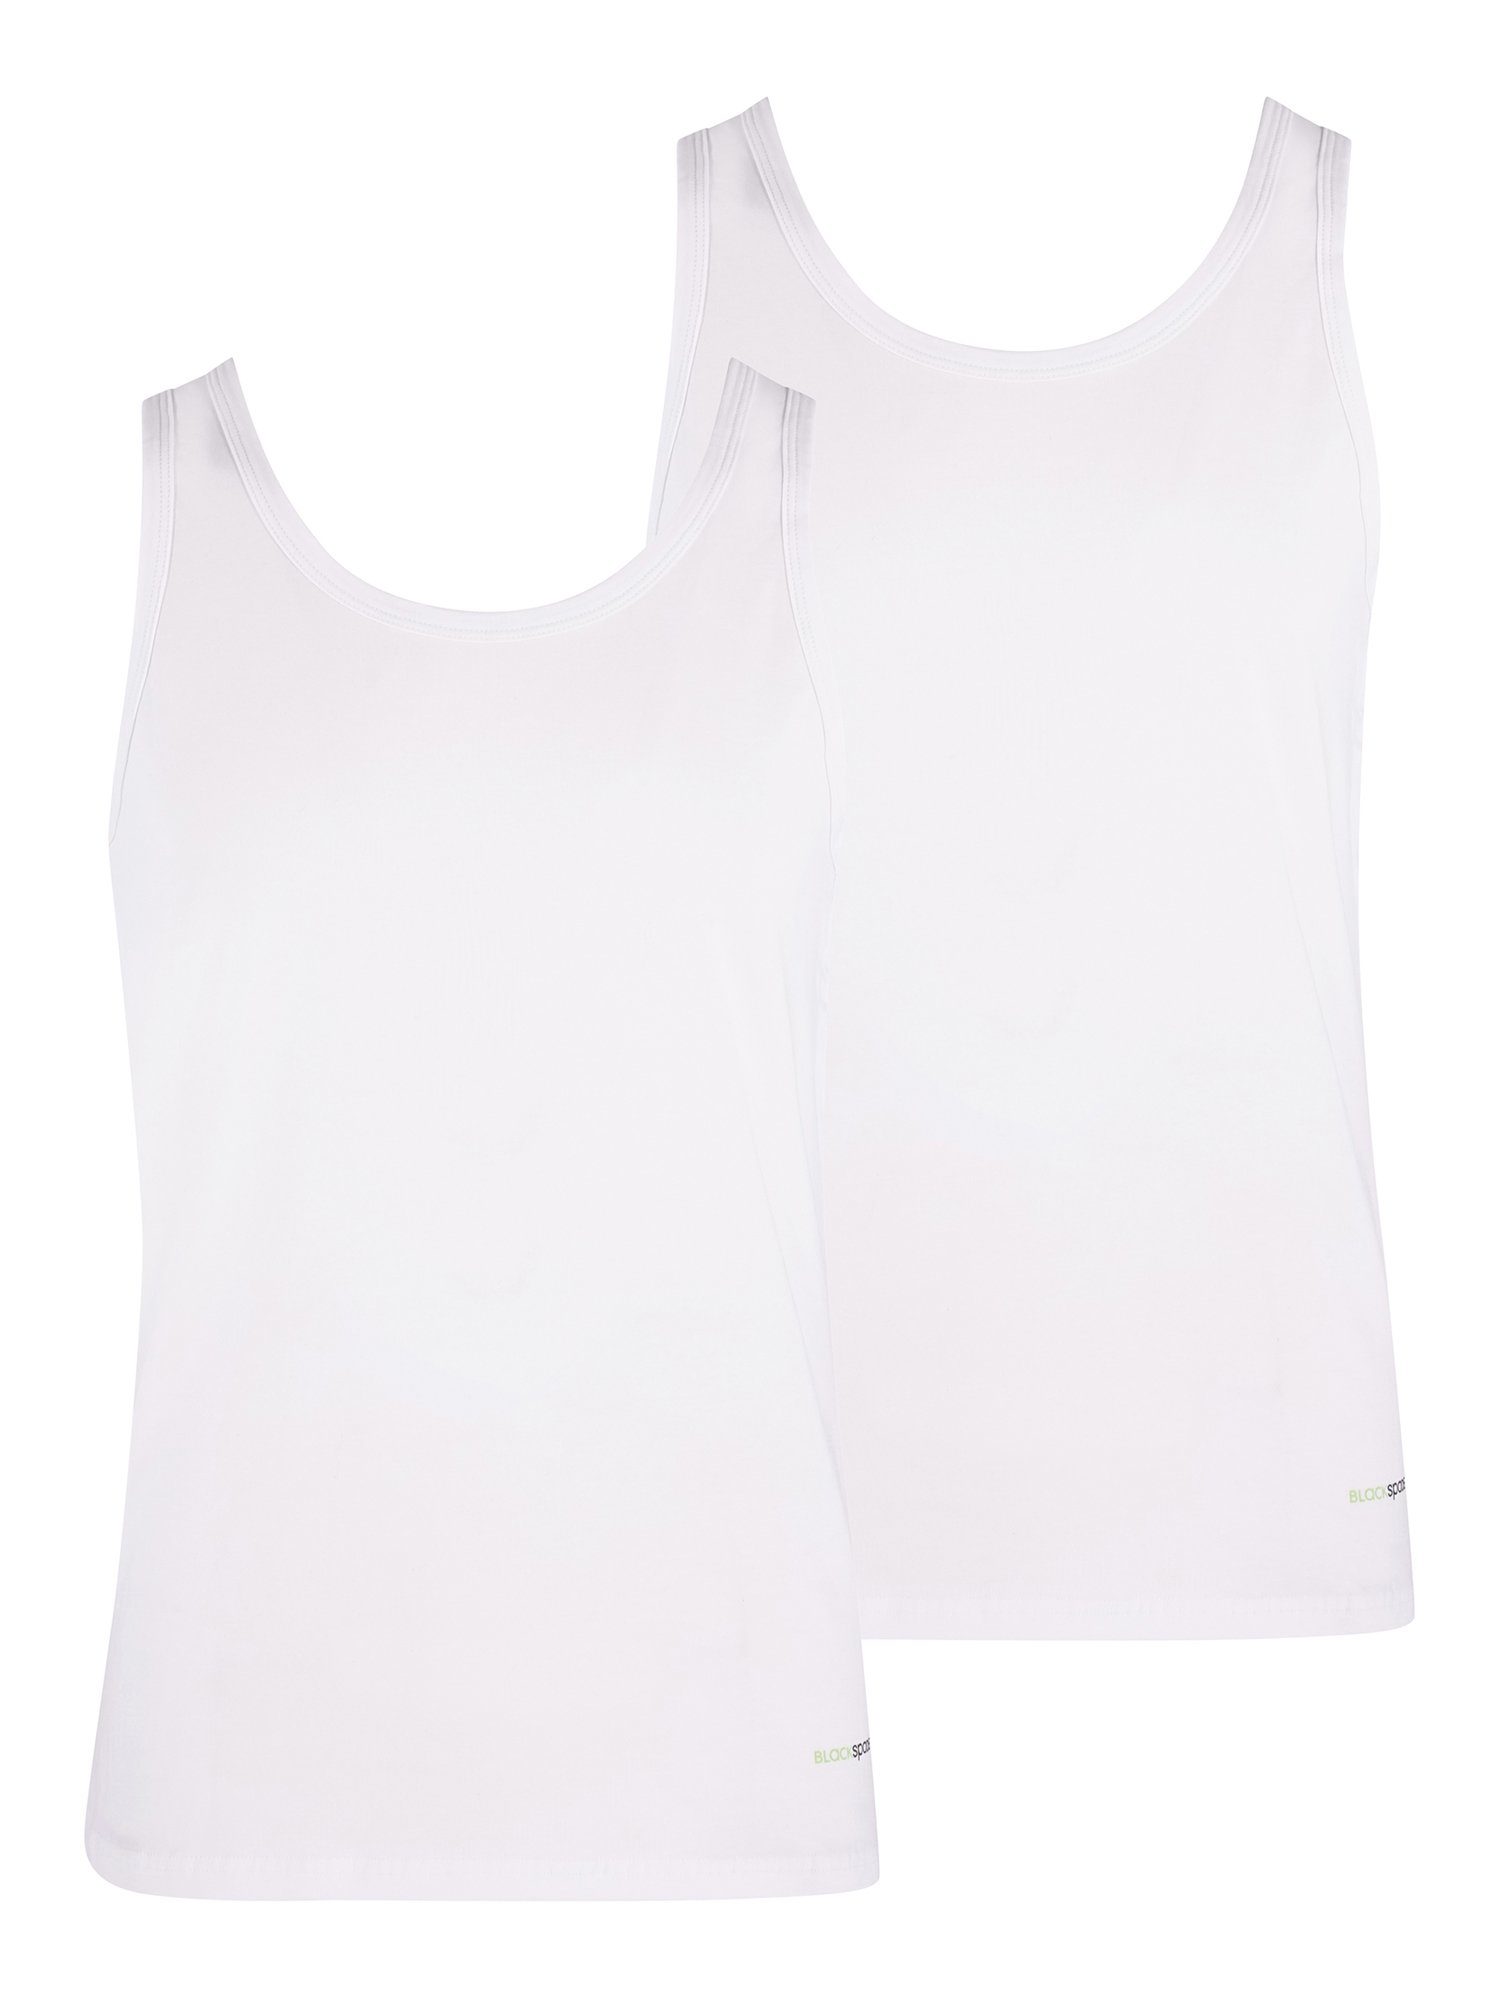 Unterhemd weiß Tender (2-St) Cotton BlackSpade